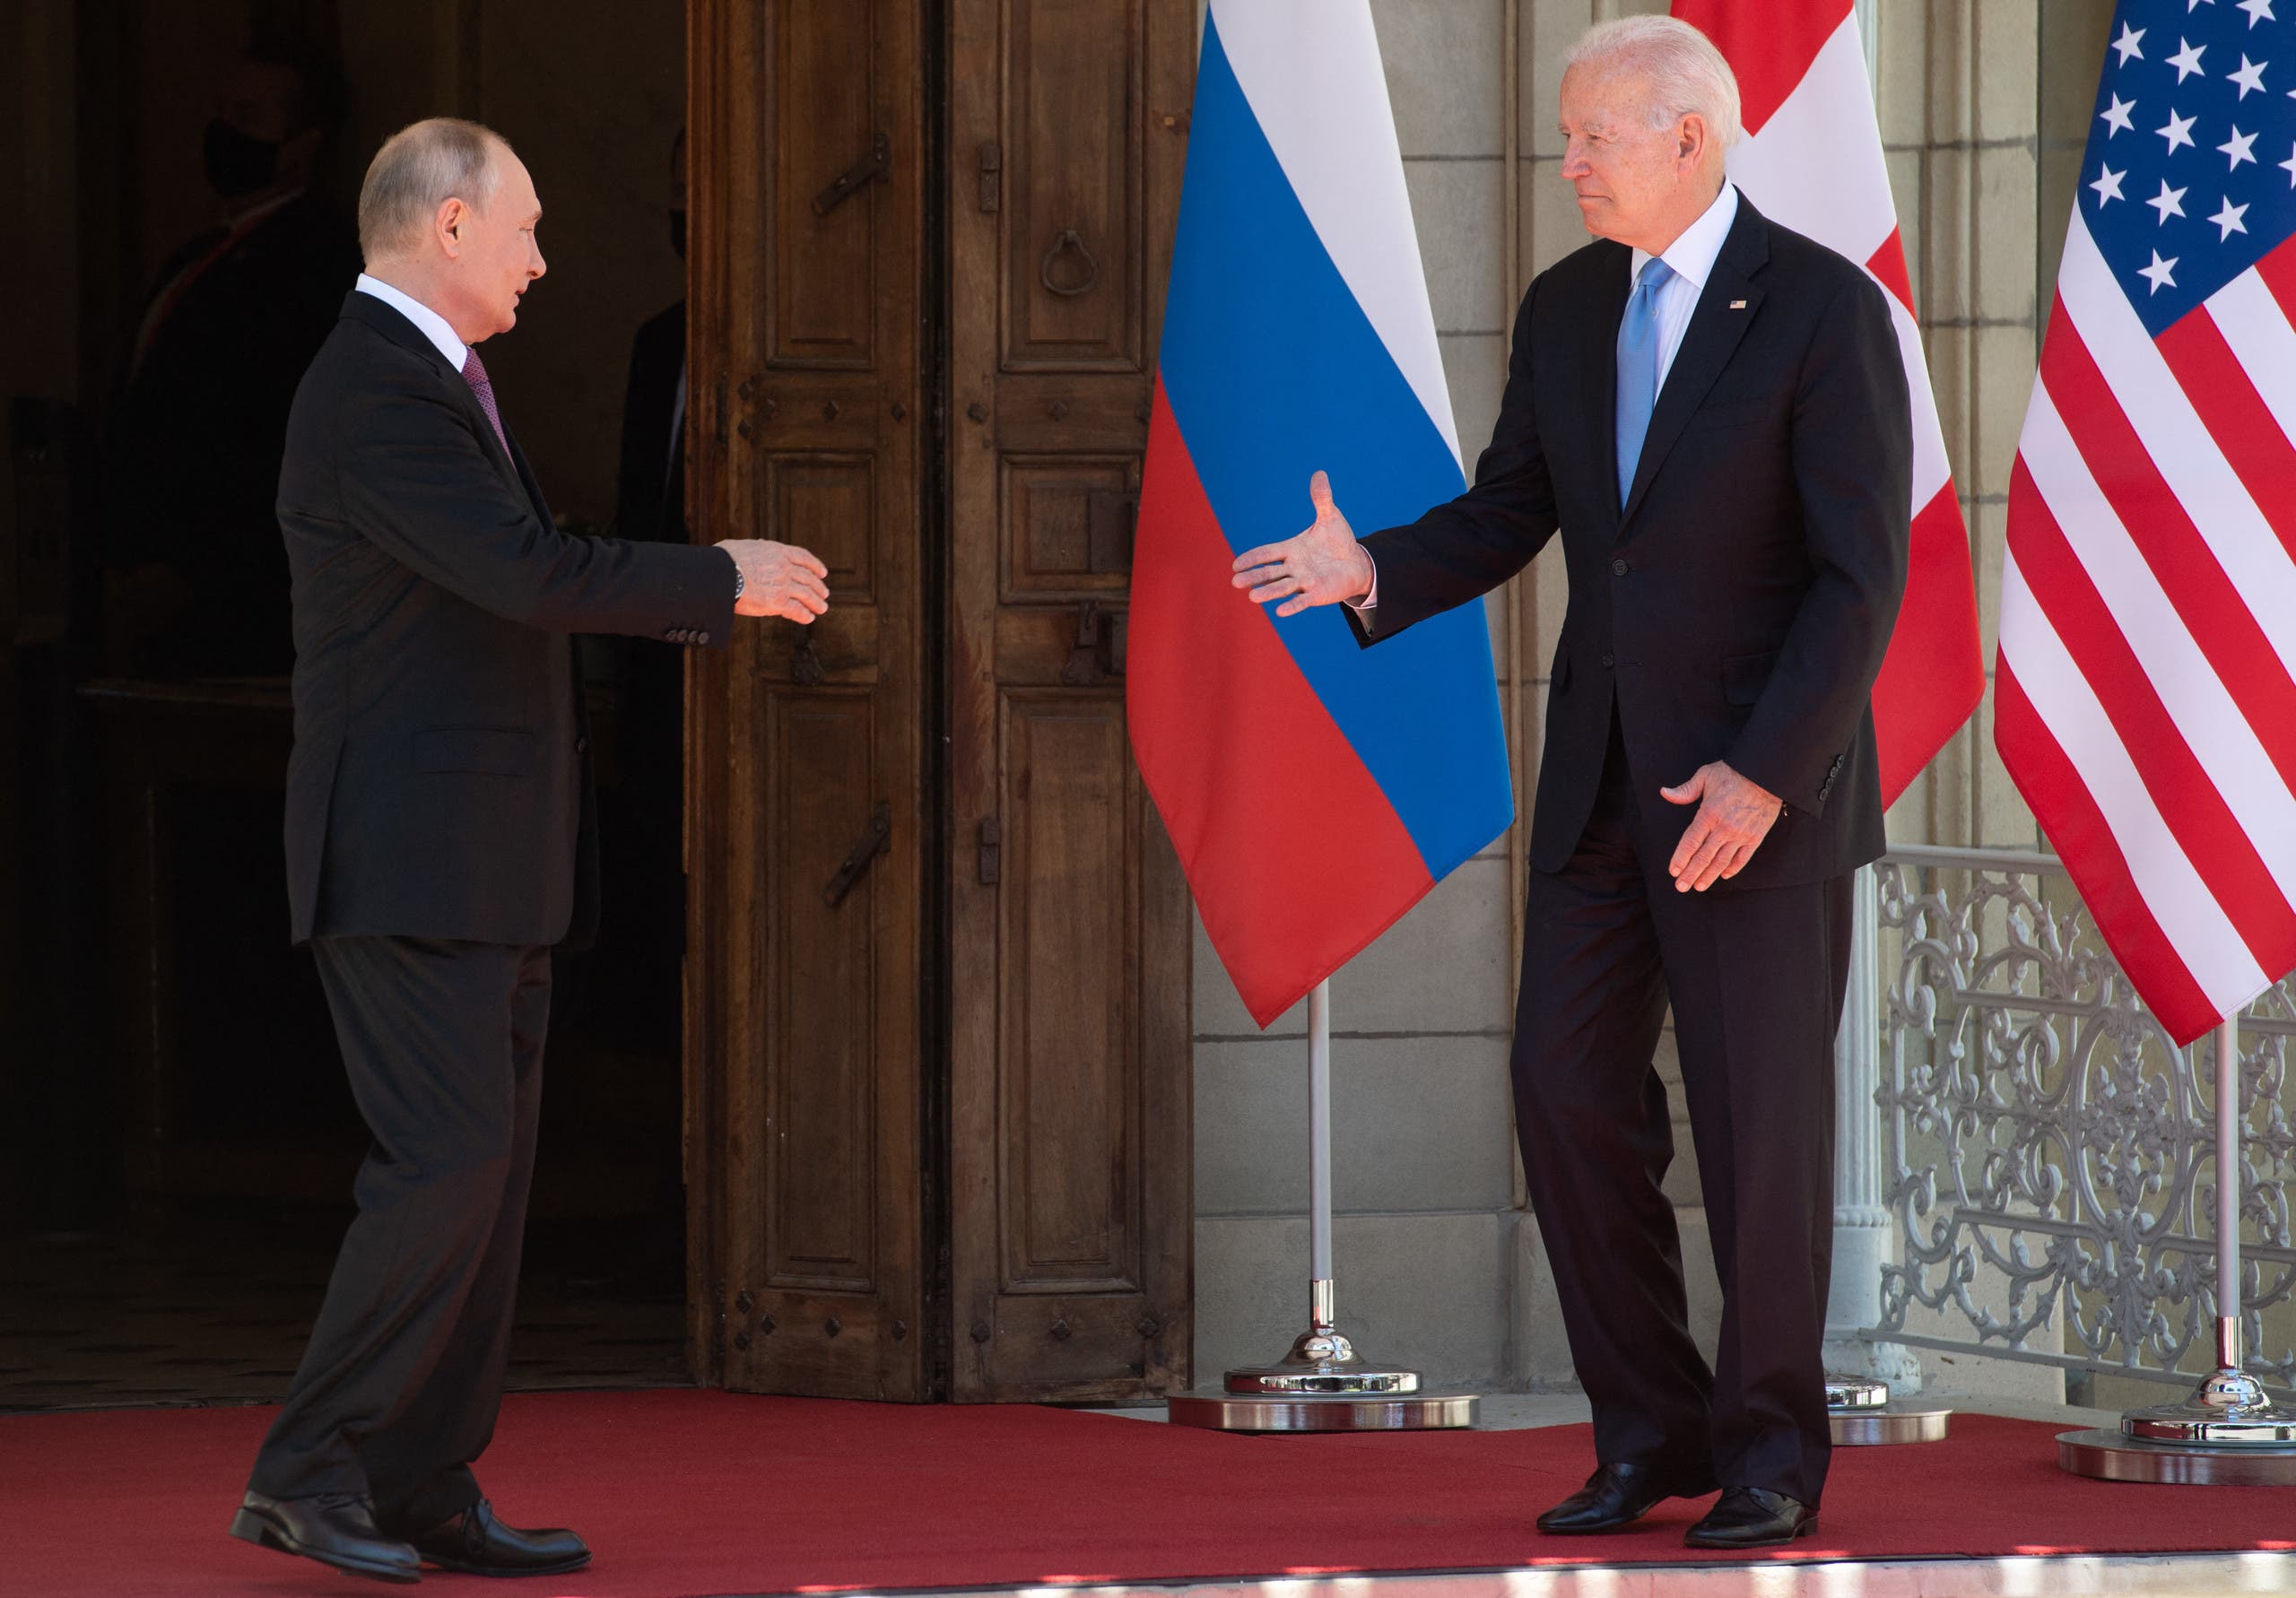 مصافحة بين بوتين وبايدن في أول لقاء بينهما في جنيف منذ انتخاب الرئيس الأميركي